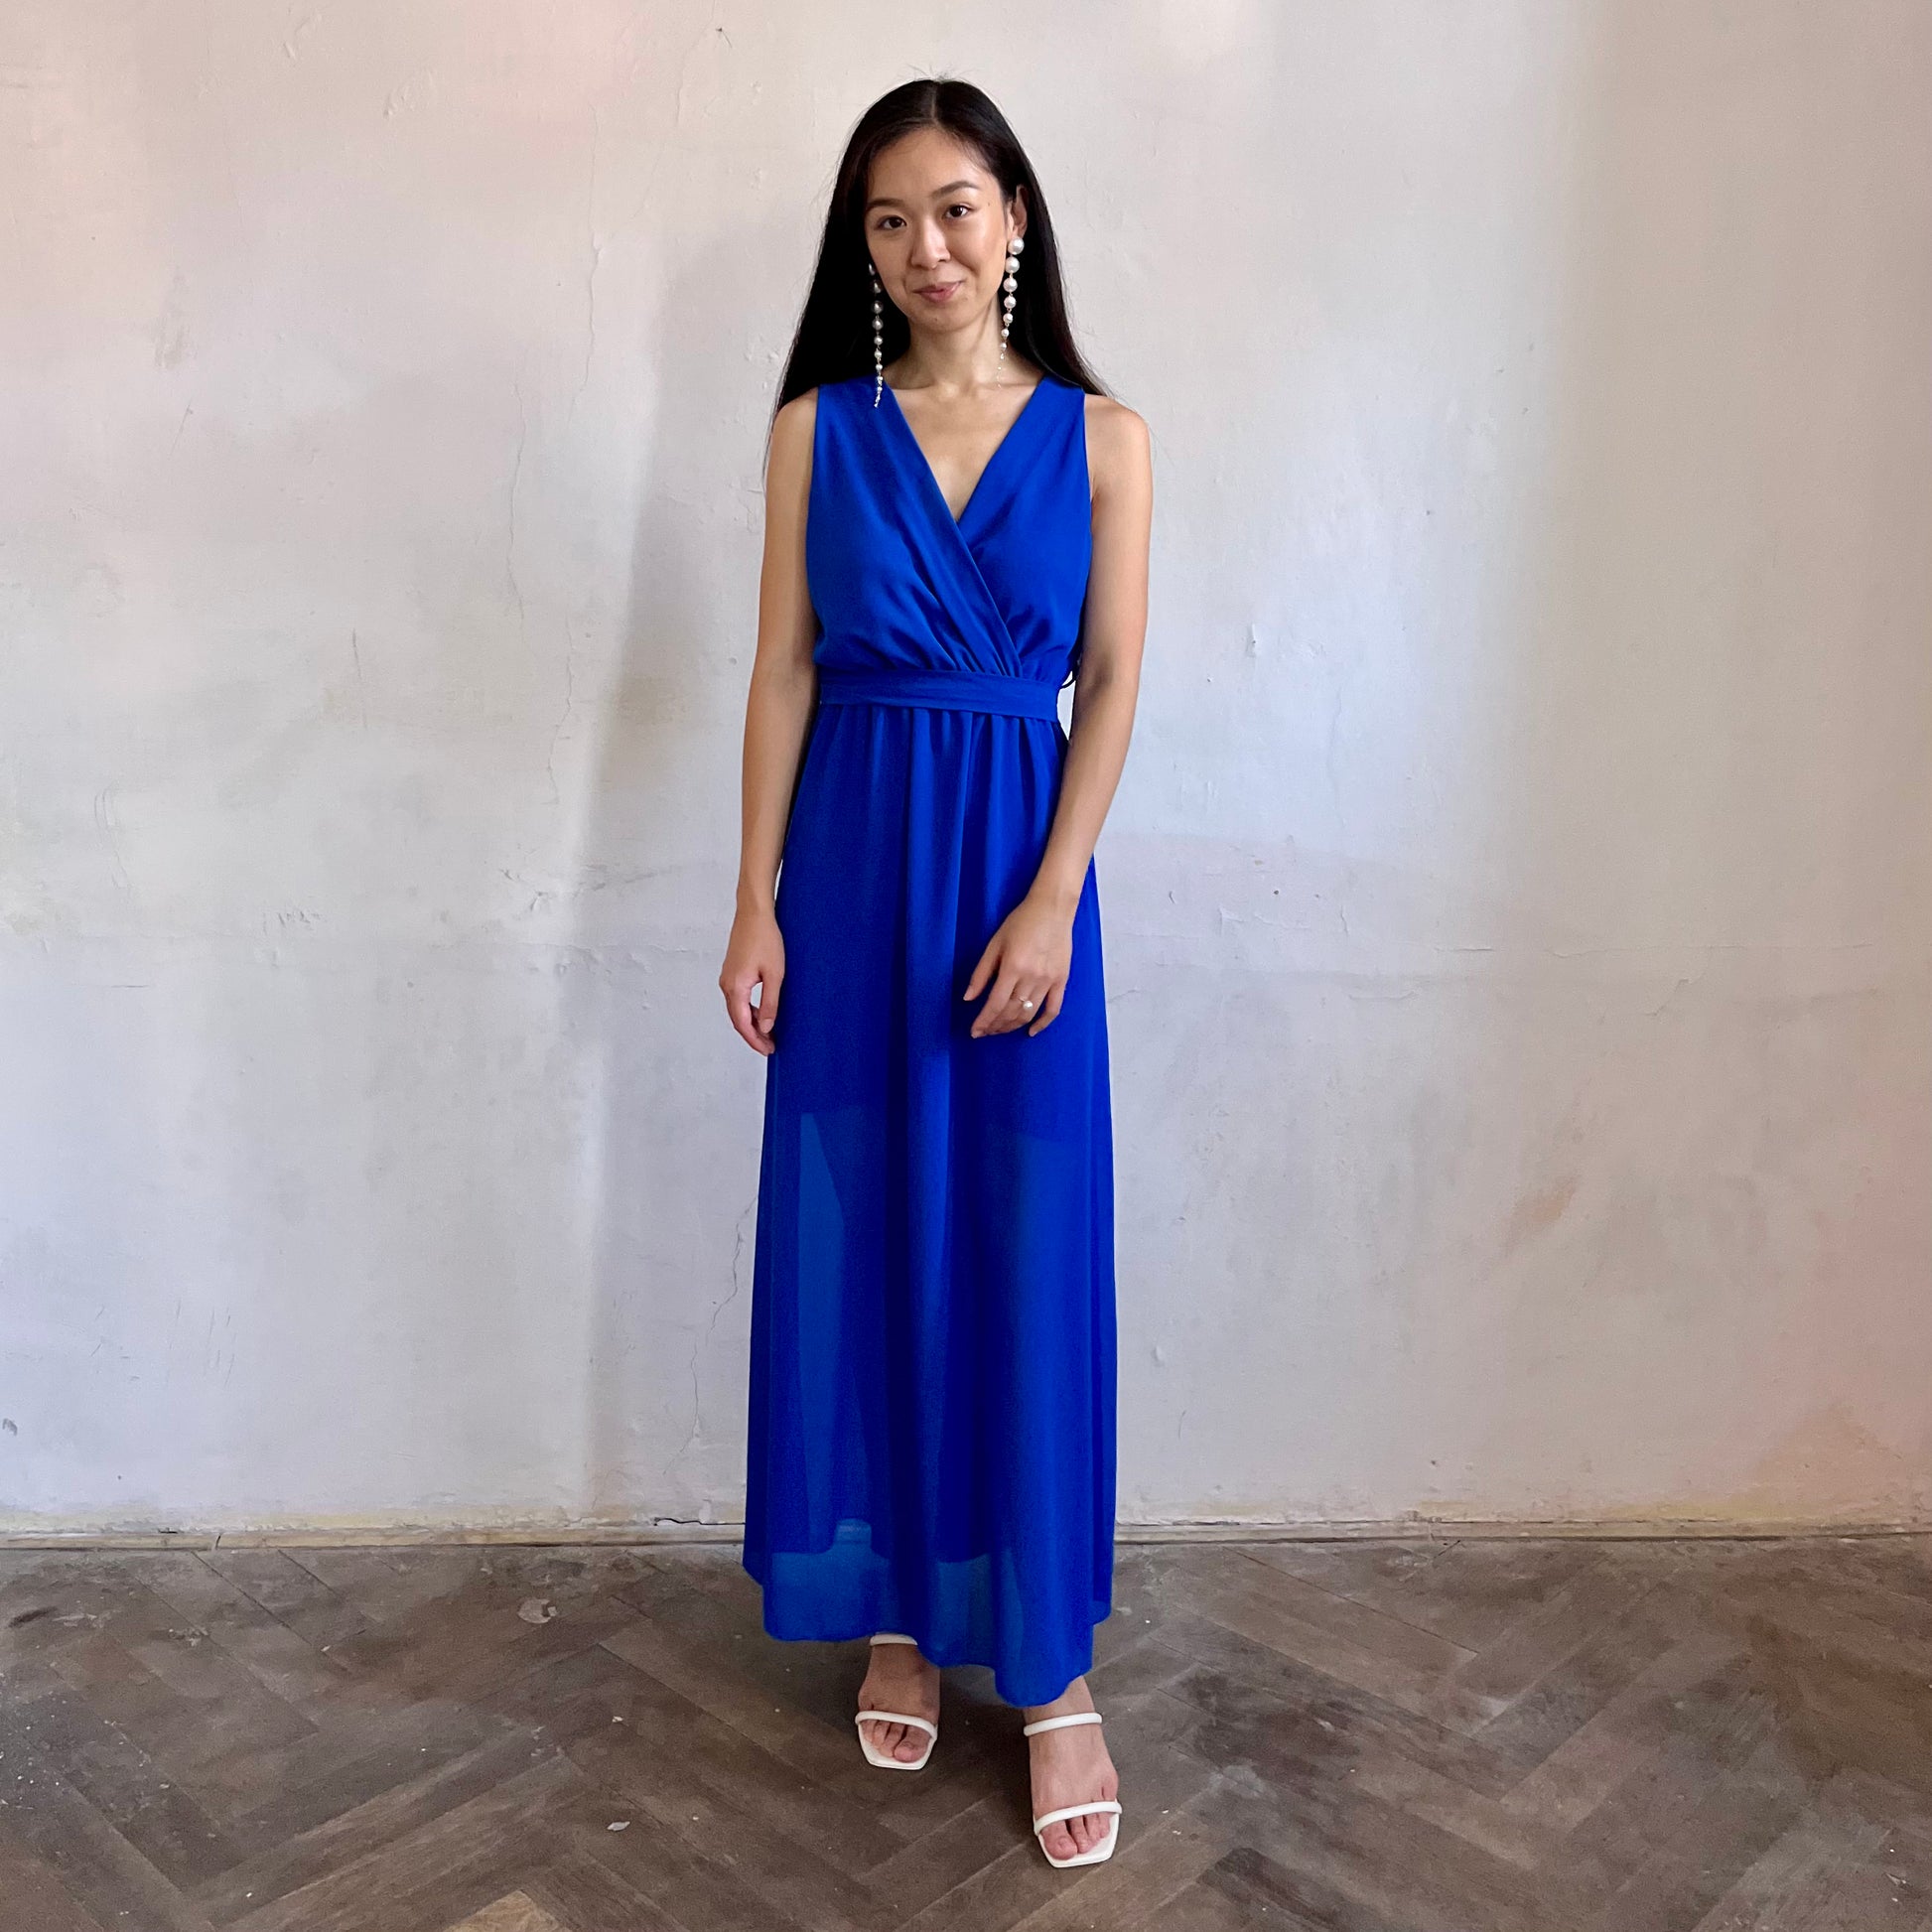 Modelka asijského původu pózující zepředu oblečená ve královsky modrých společenských šatech